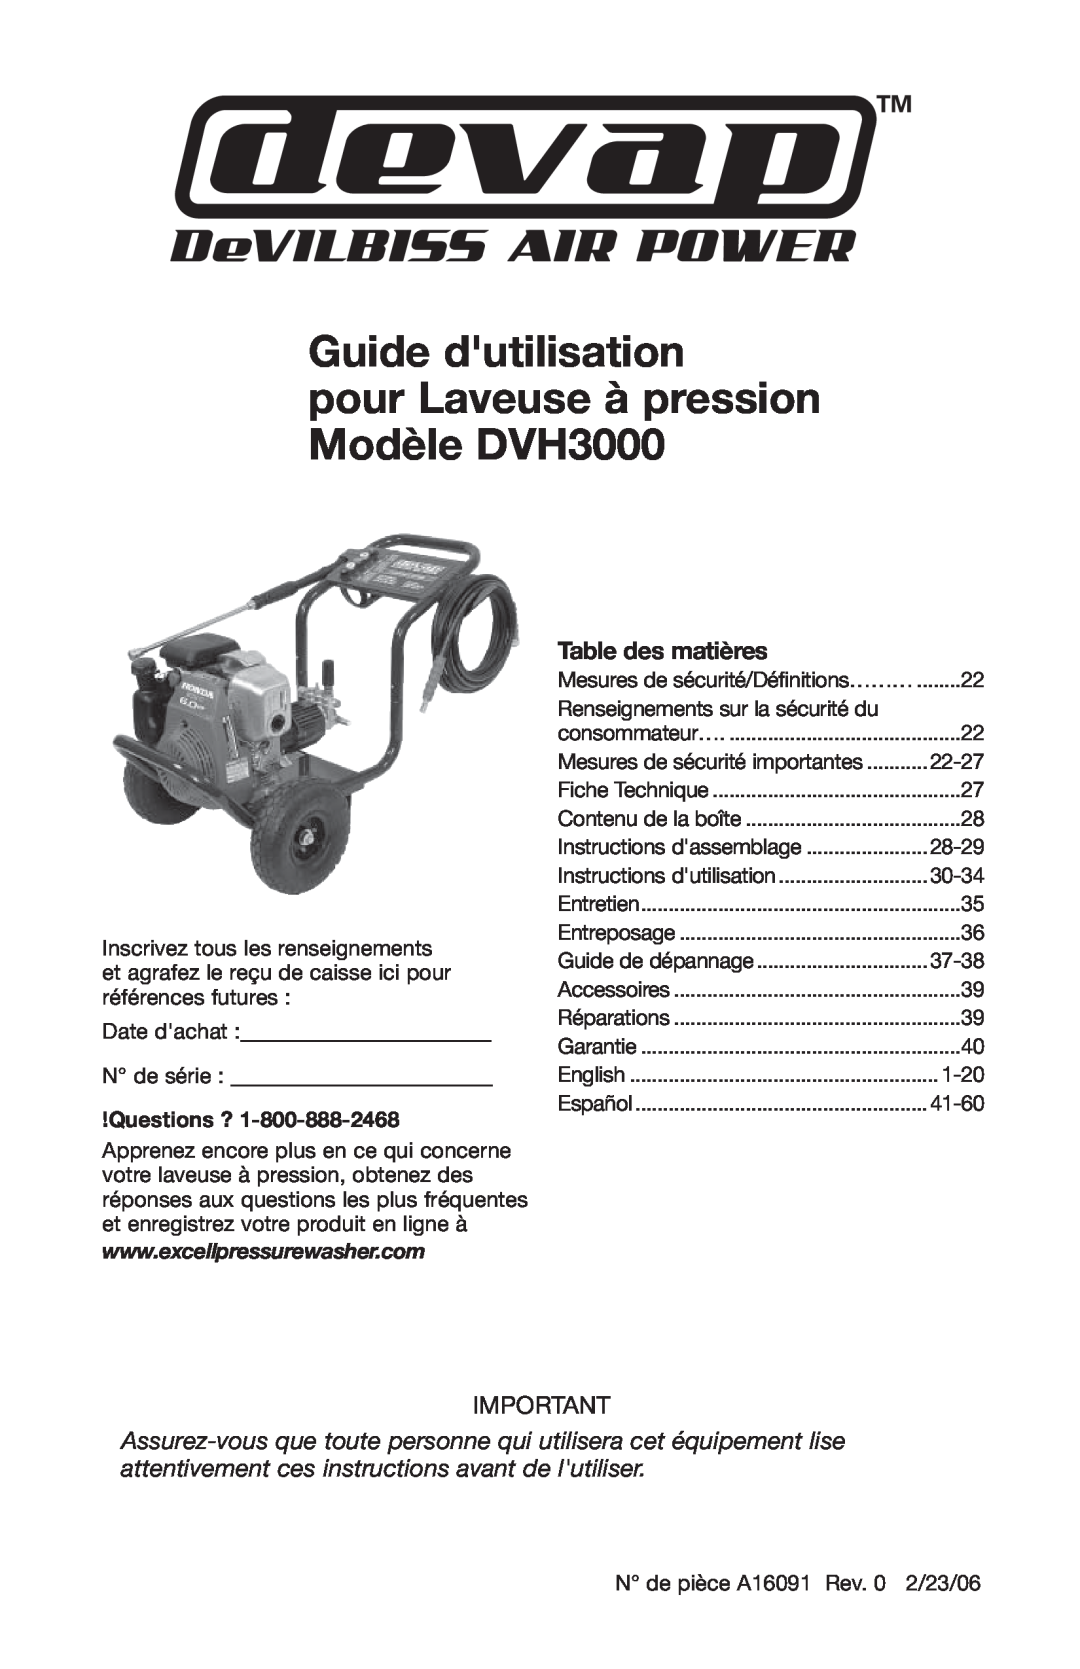 DeVillbiss Air Power Company A16091 Guide dutilisation pour Laveuse à pression Modèle DVH3000, Table des matières 